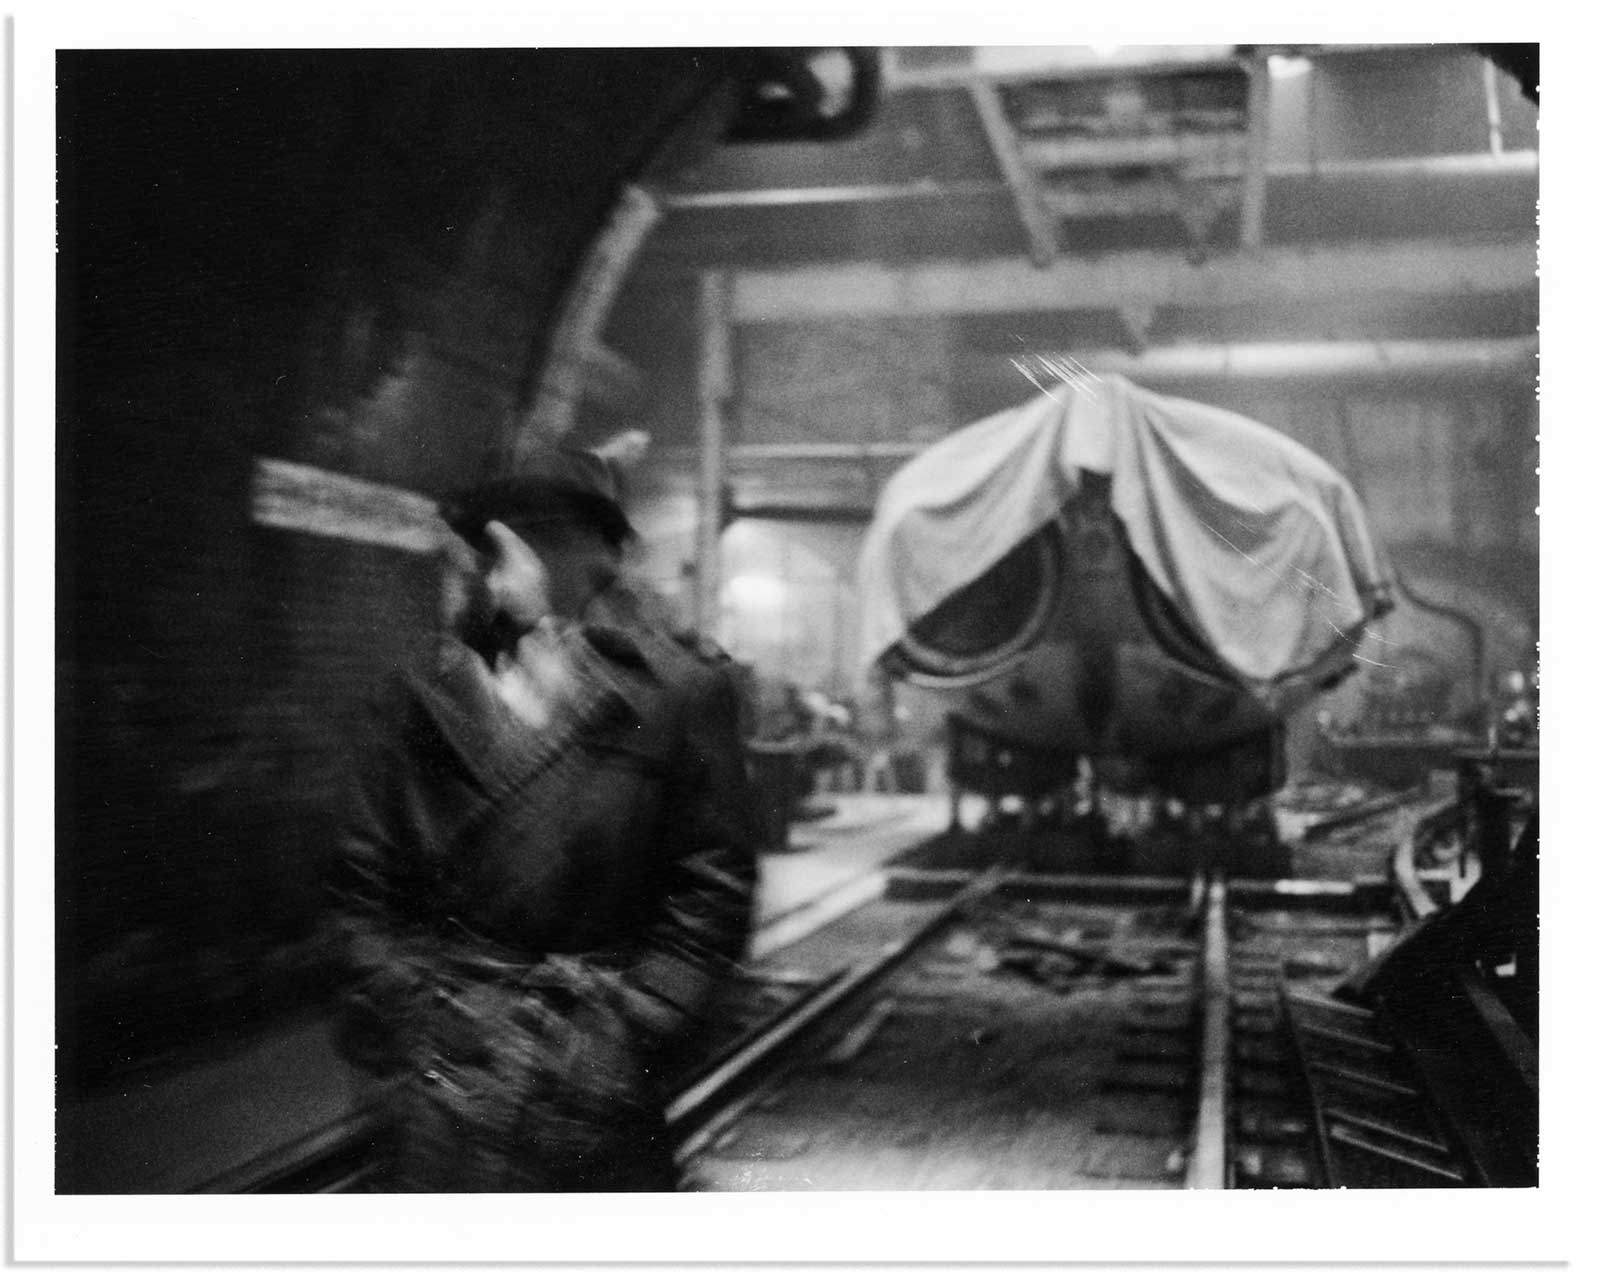 تصویر سیاه و سفید از فیلم واچمن زک اسنایدر با قدم زدن یکی از شخصیت های خلق شده توسط الن مور افسانه ای